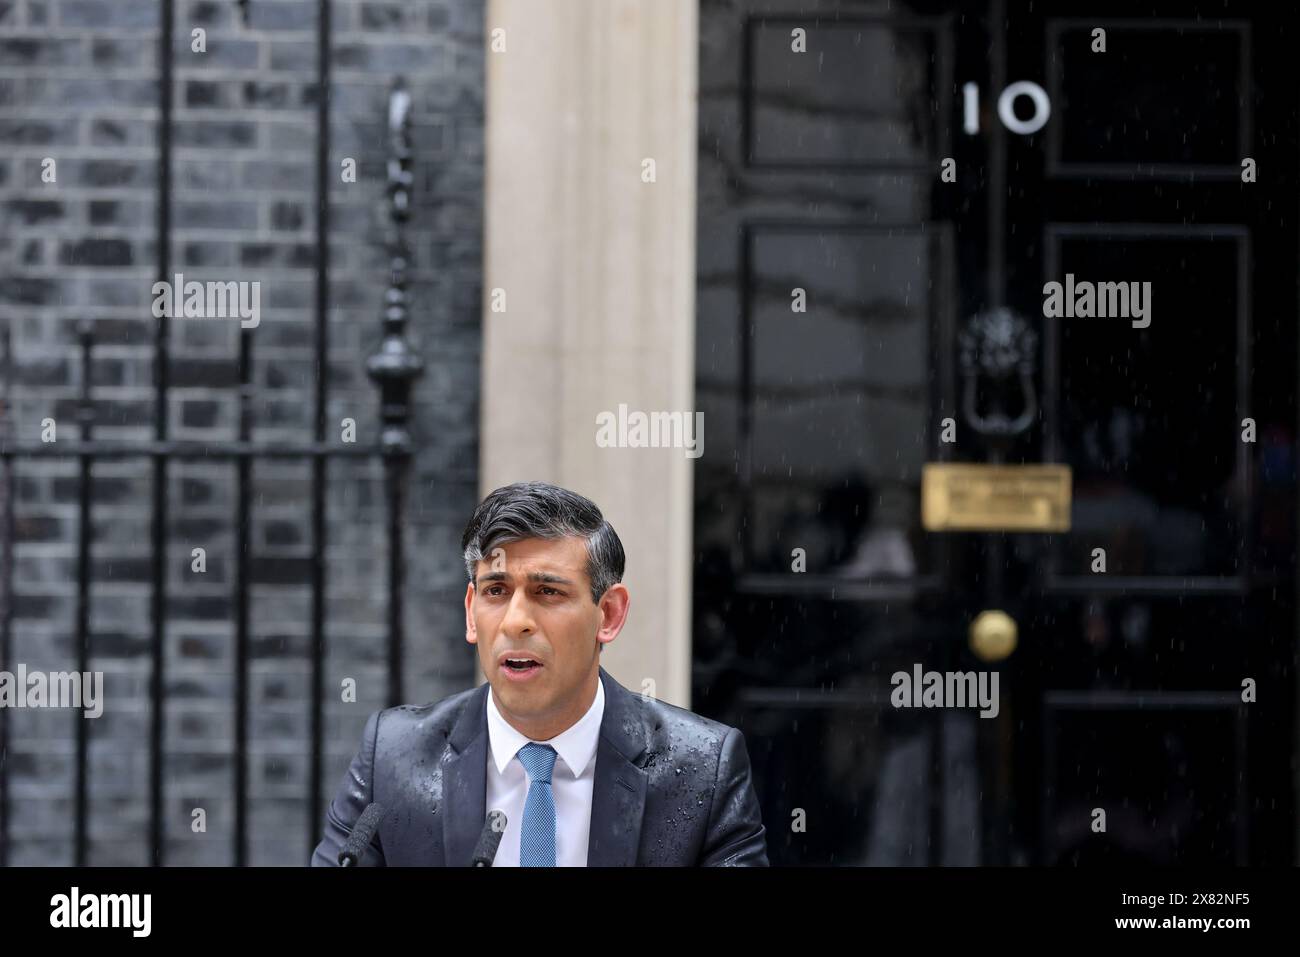 Londres, Royaume-Uni. 22 mai 2024. Le premier ministre britannique Rishi Sunak prend la parole devant le 10 Downing Street à Londres, en Grande-Bretagne, le 22 mai 2024. Sunak a annoncé mercredi que le pays tiendrait des élections générales le 4 juillet. Crédit : Xinhua/Alamy Live News Banque D'Images